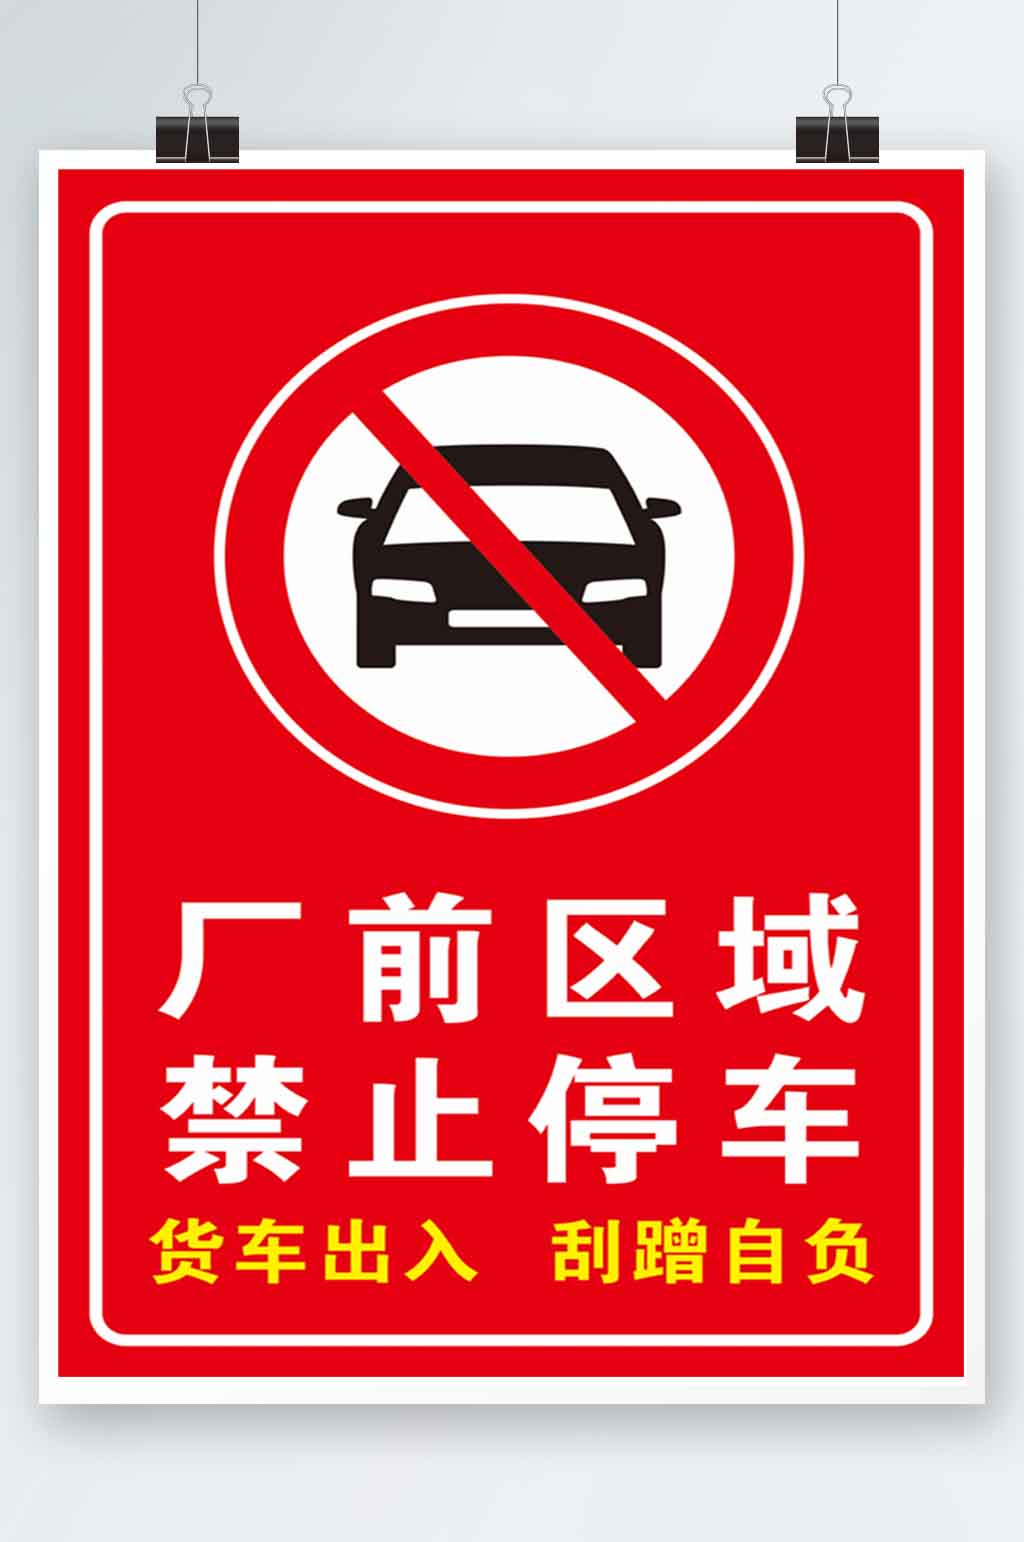 厂前区域禁止停车